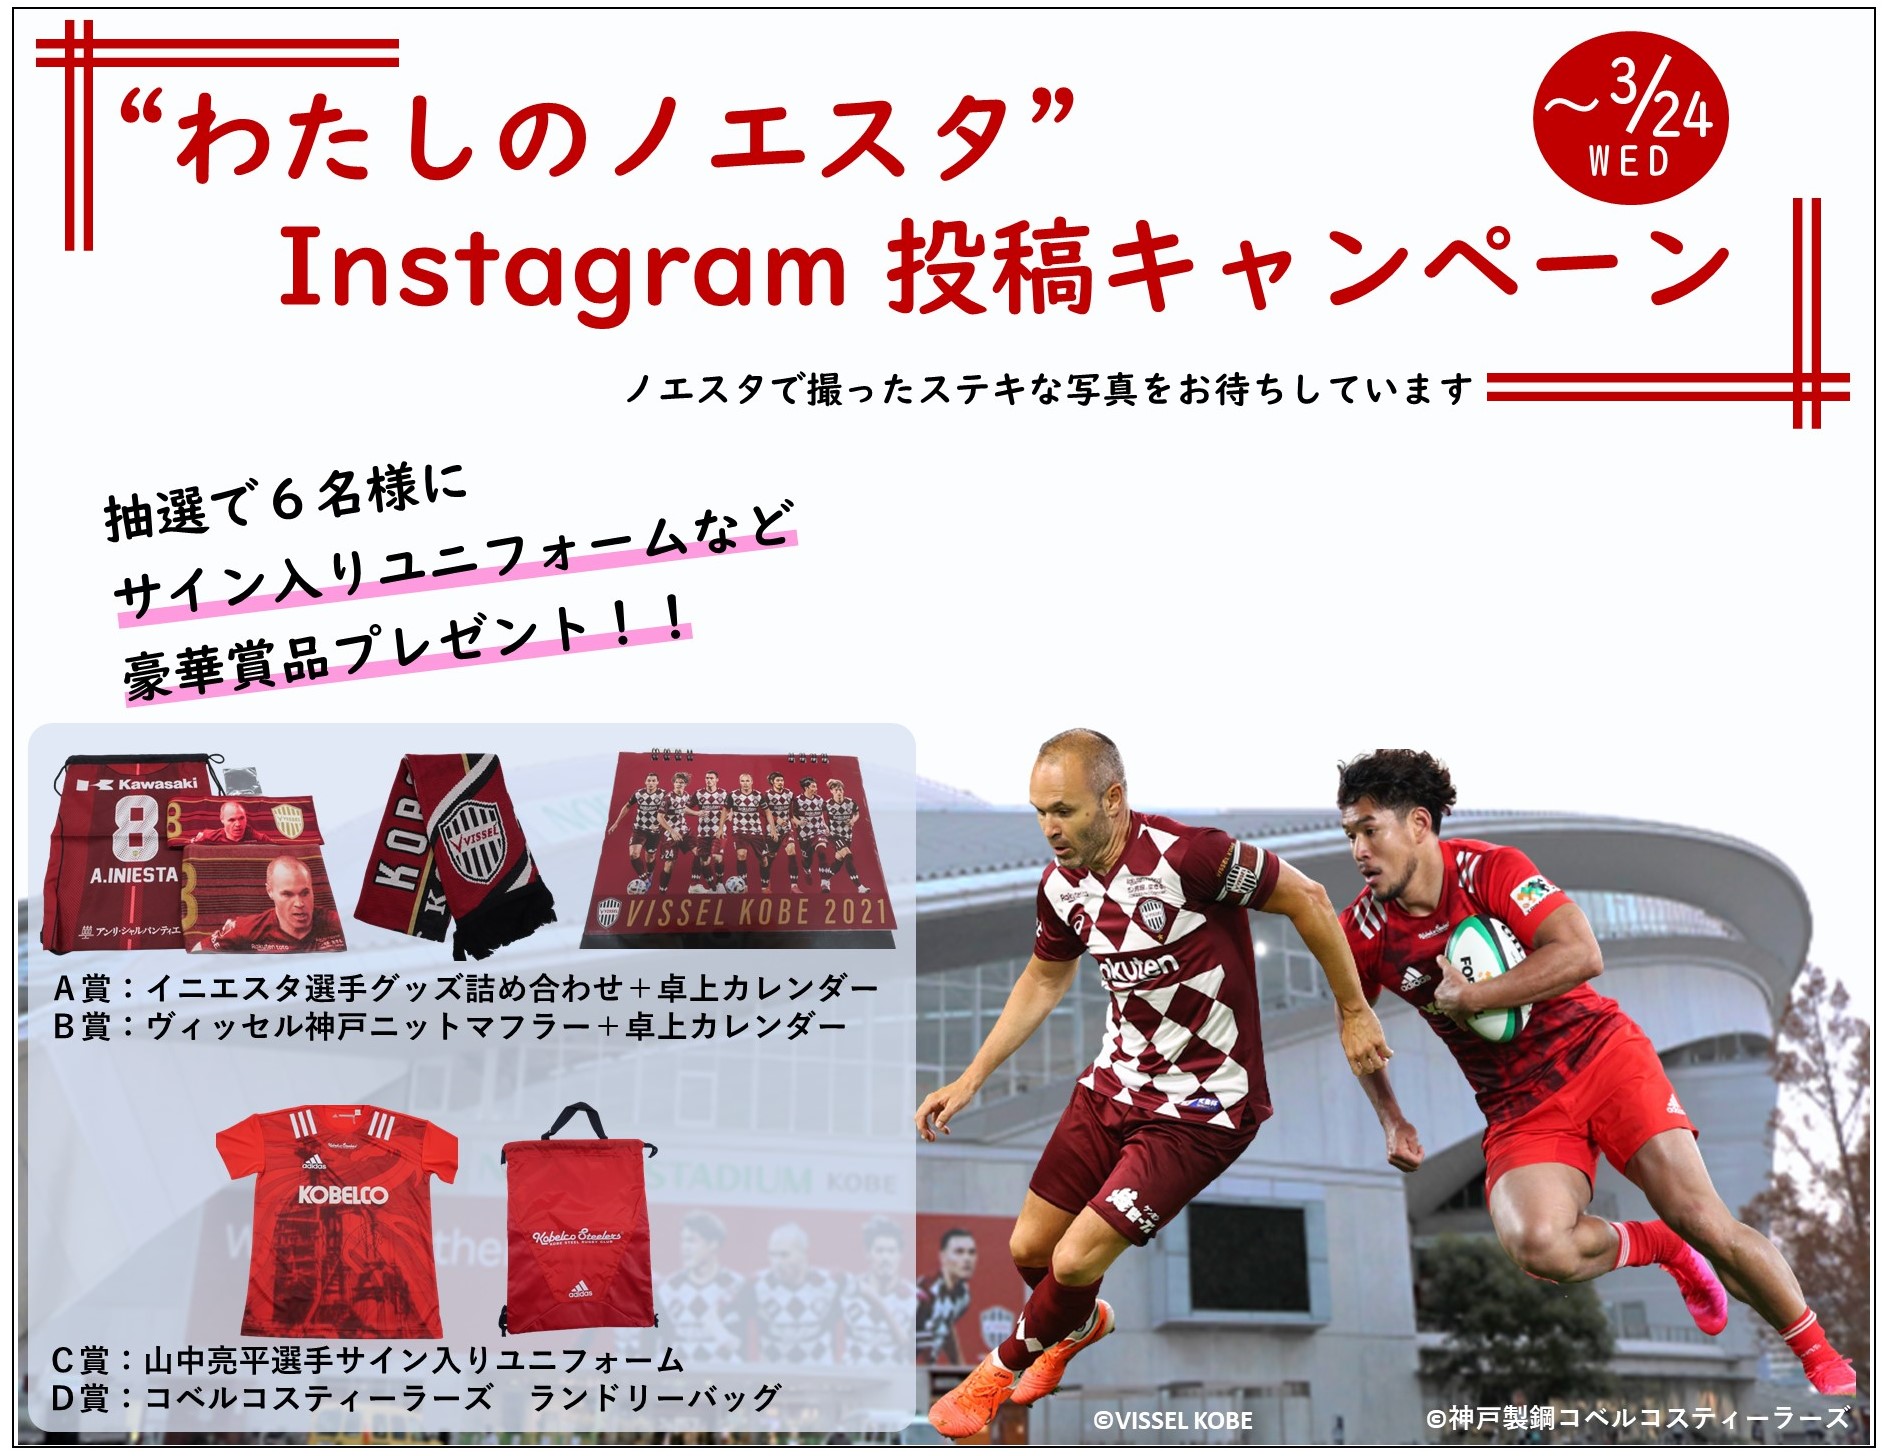 わたしのノエスタ Instagram投稿キャンペーン Kobe Sports Web